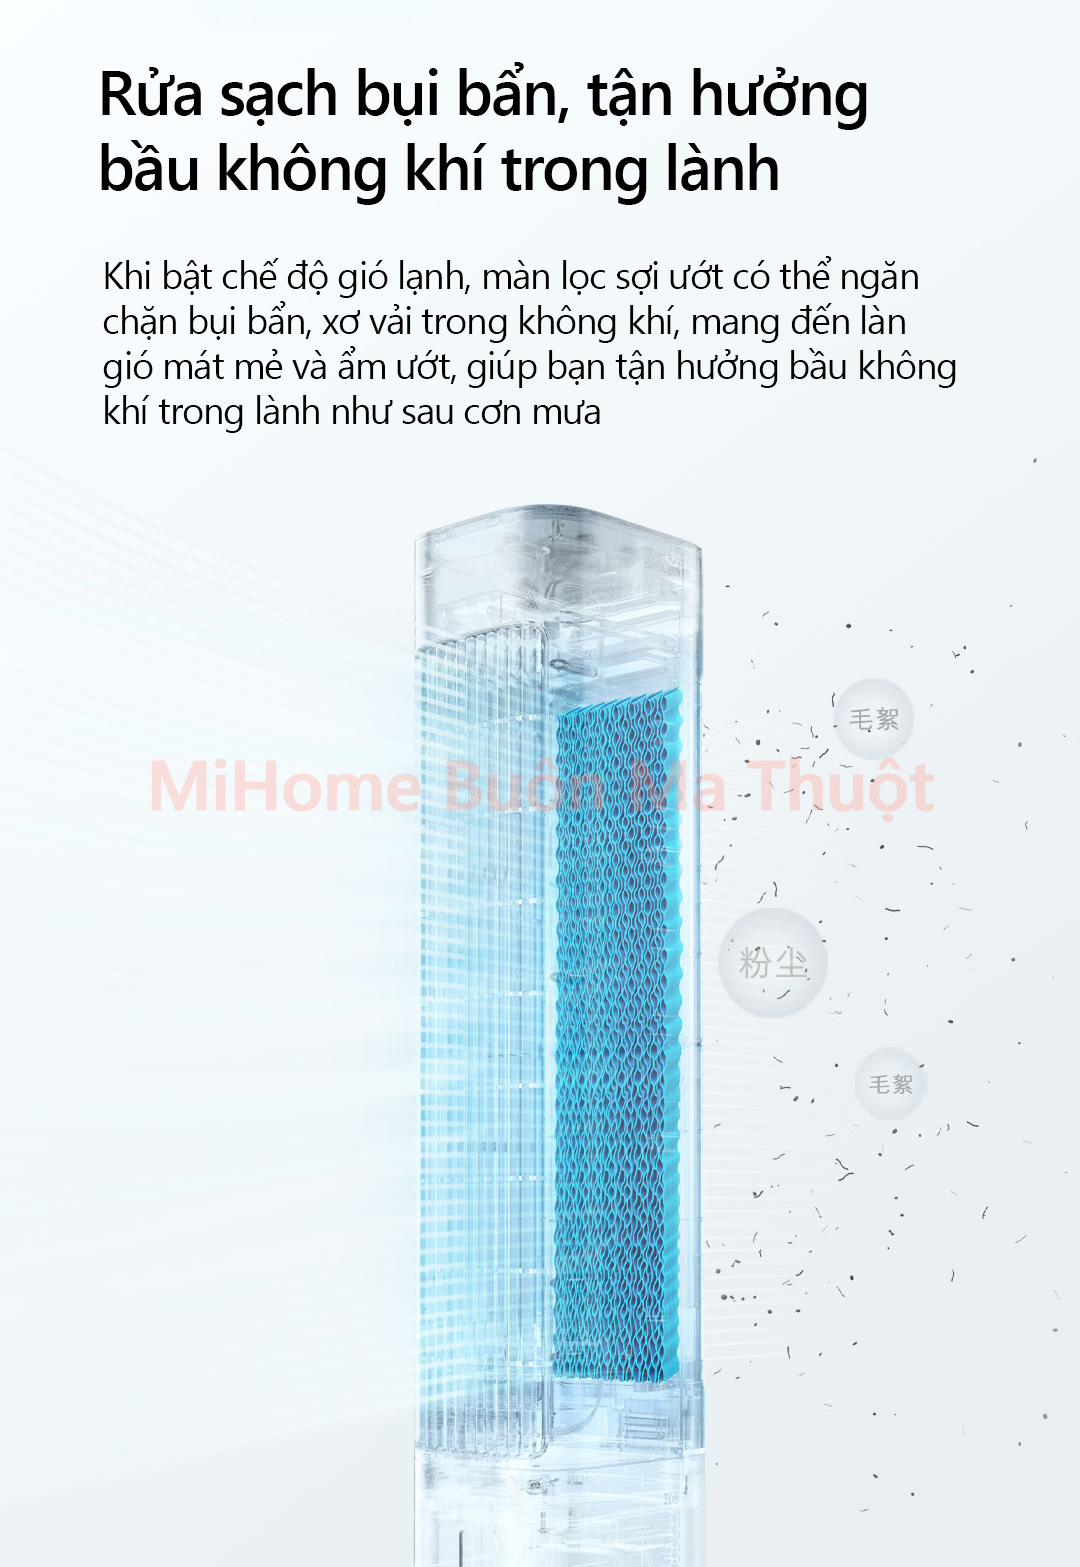 Quạt tháp hơi nước thông minh Xiaomi Mijia